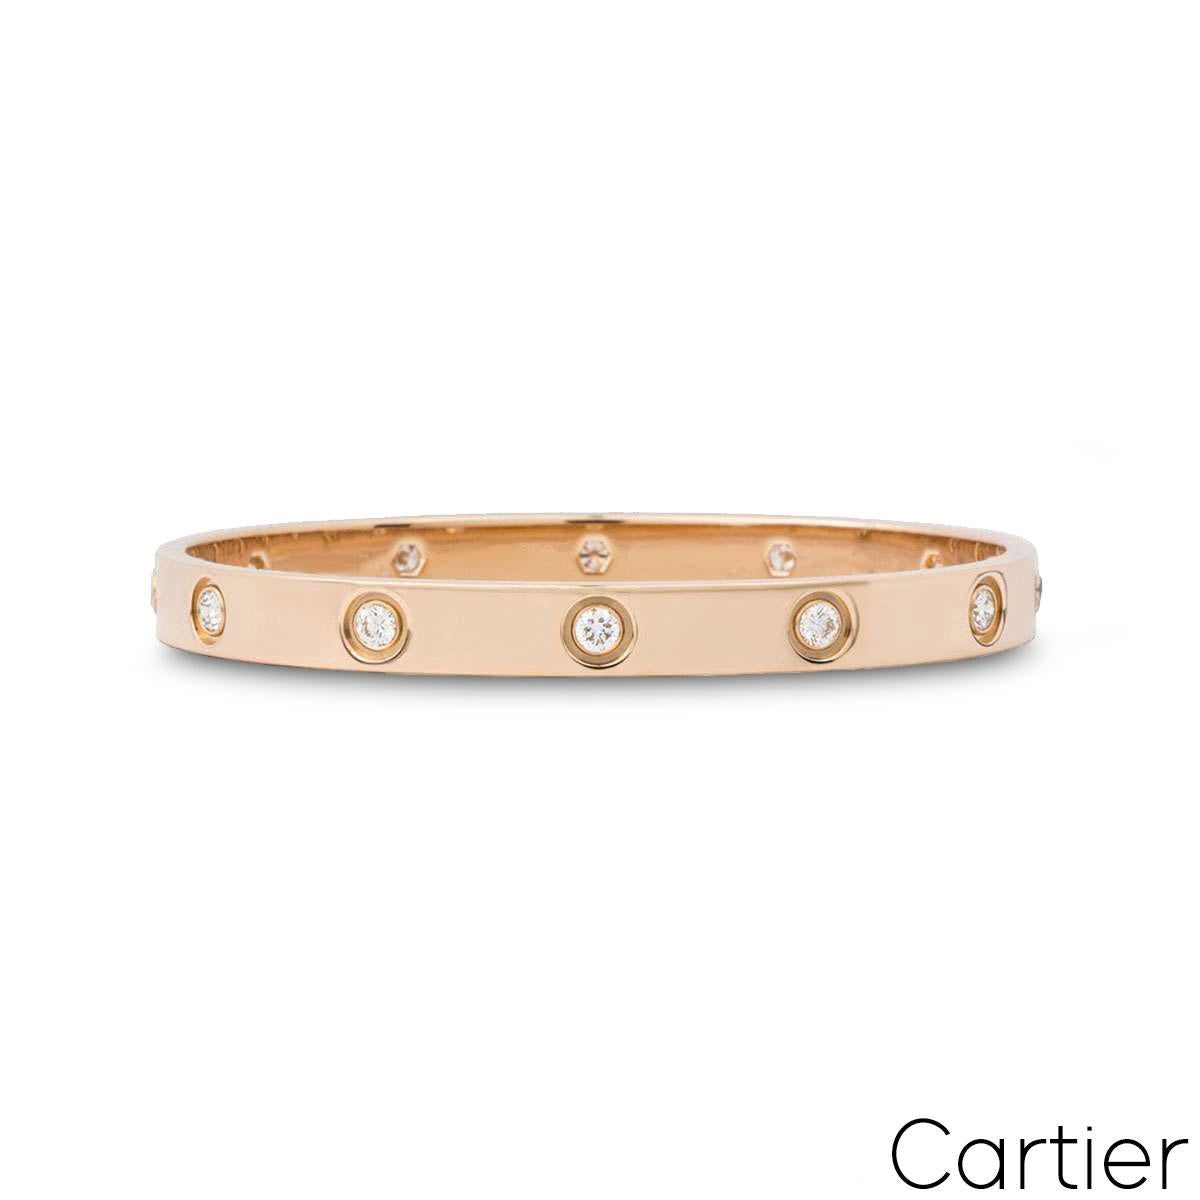 Un bracelet en or rose 18 carats plein de diamants par Cartier de la Collectional. Le bracelet est serti de 10 diamants ronds de taille brillant circulant sur le bord extérieur pour un total de 0,96ct. Le bracelet, de taille 18, est doté du nouveau